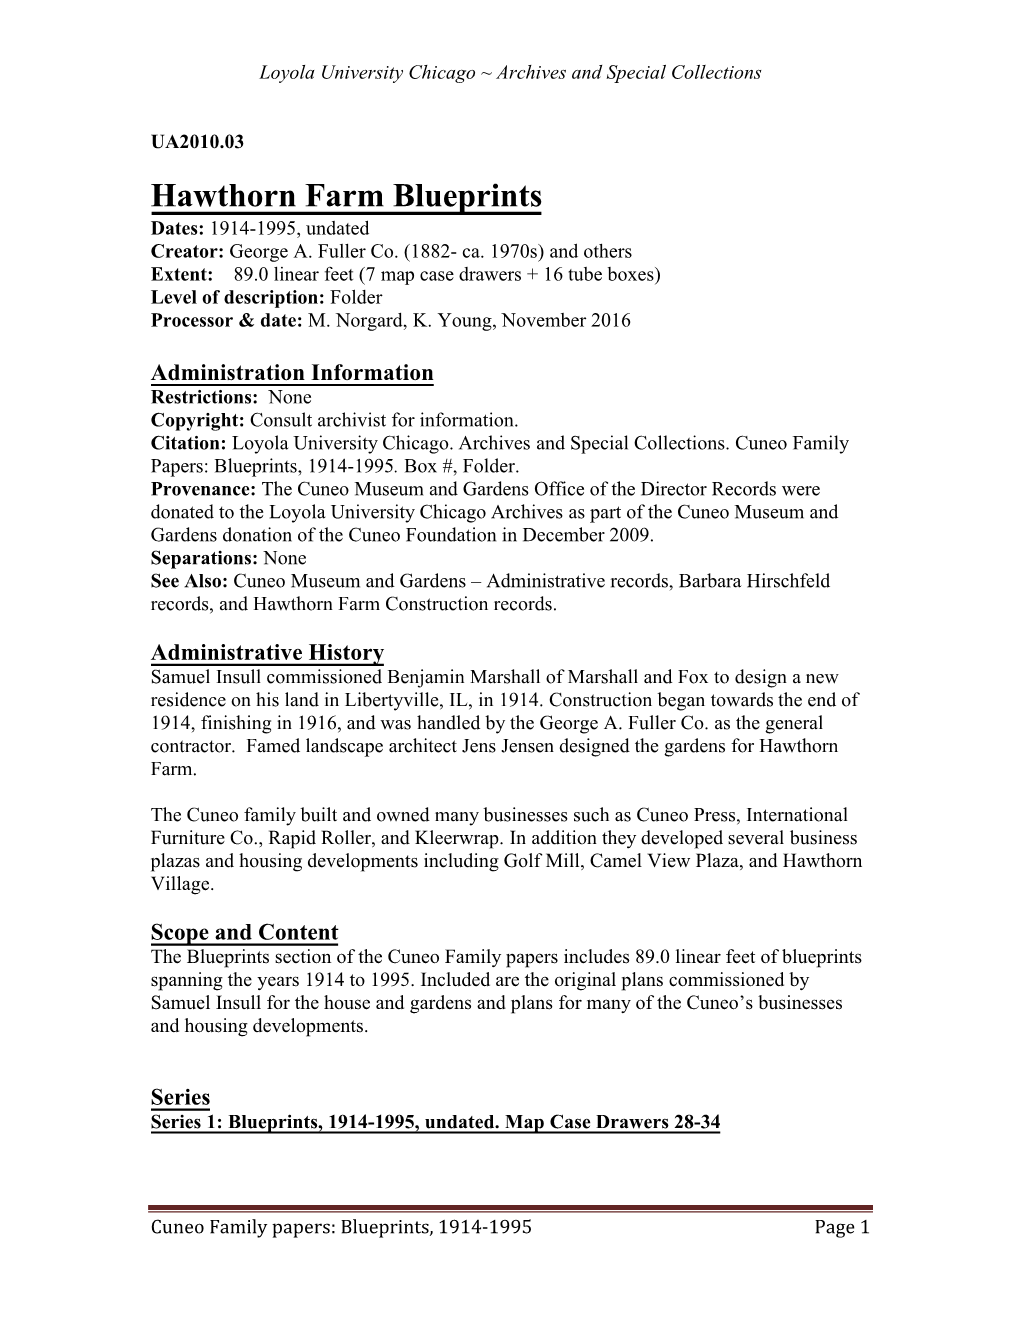 Hawthorn Farm Blueprints, 1914-1995